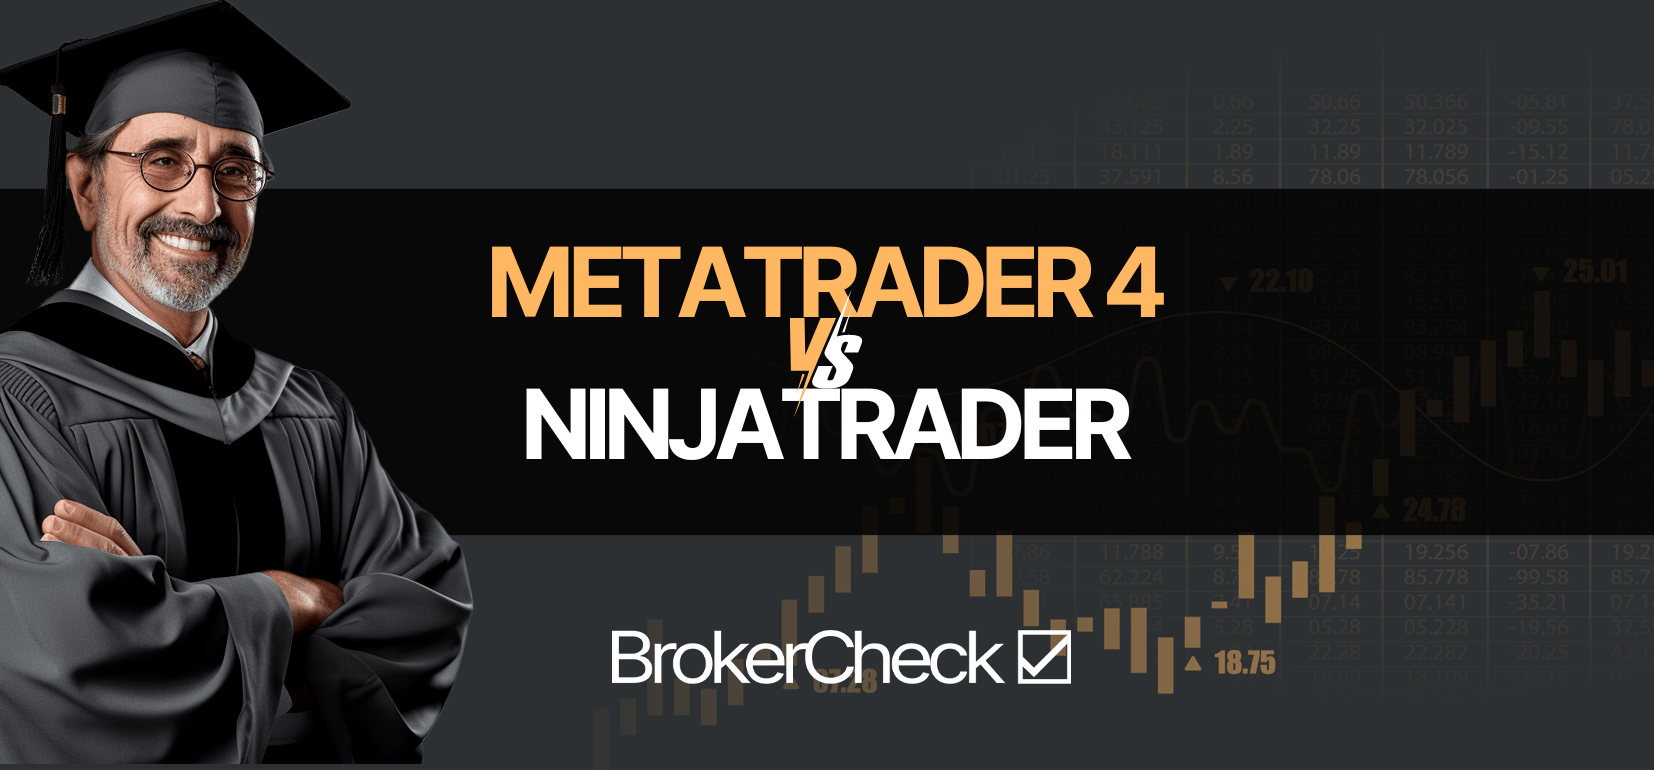 MetaTrader 4 contra ninjaTrader